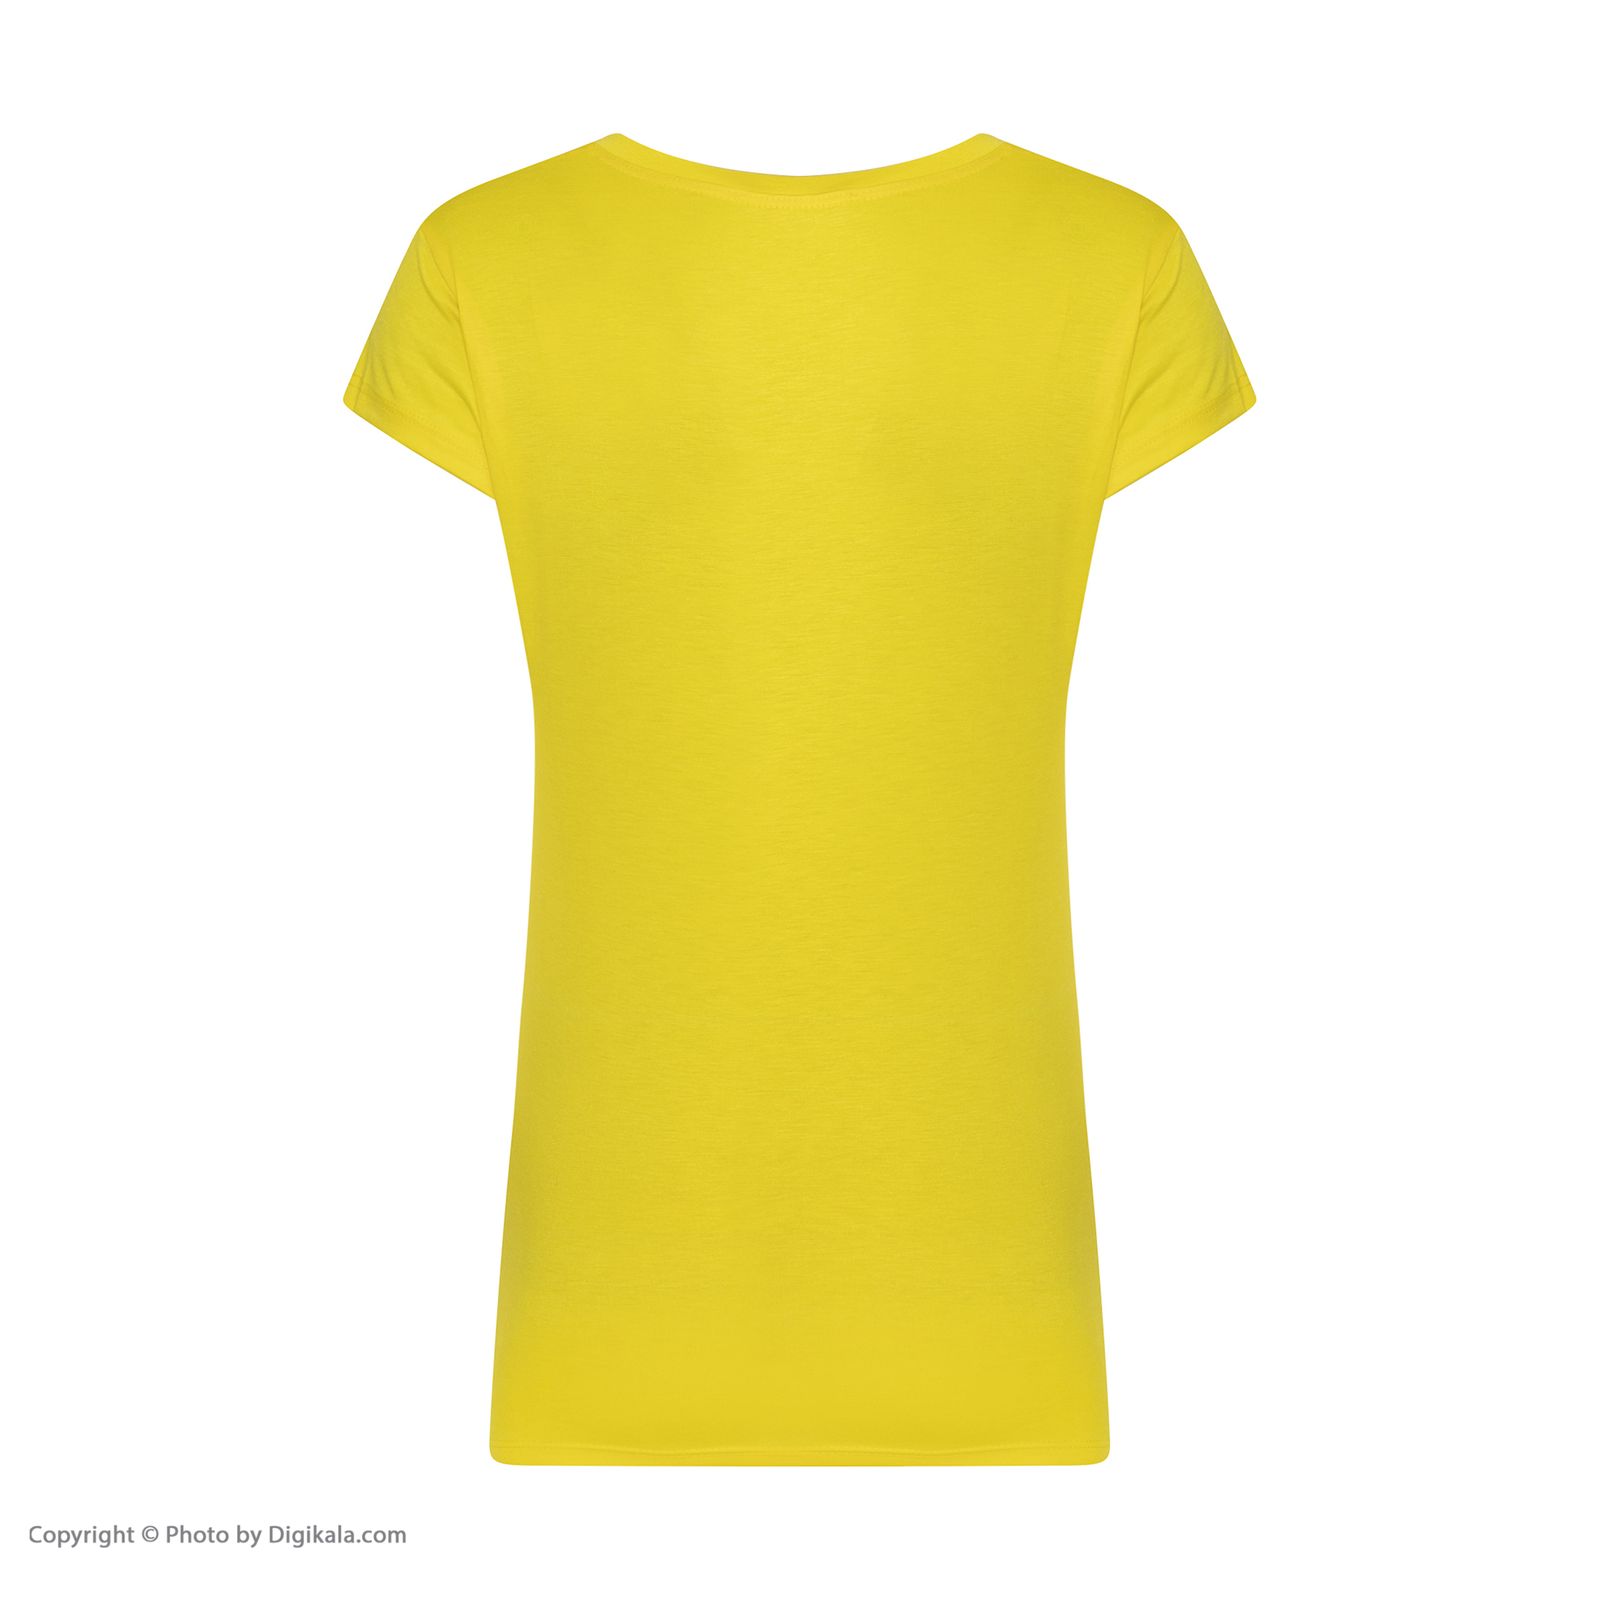 ست تی شرت و شلوارک زنانه افراتین مدل آلبالو کد 6557 رنگ زرد -  - 4